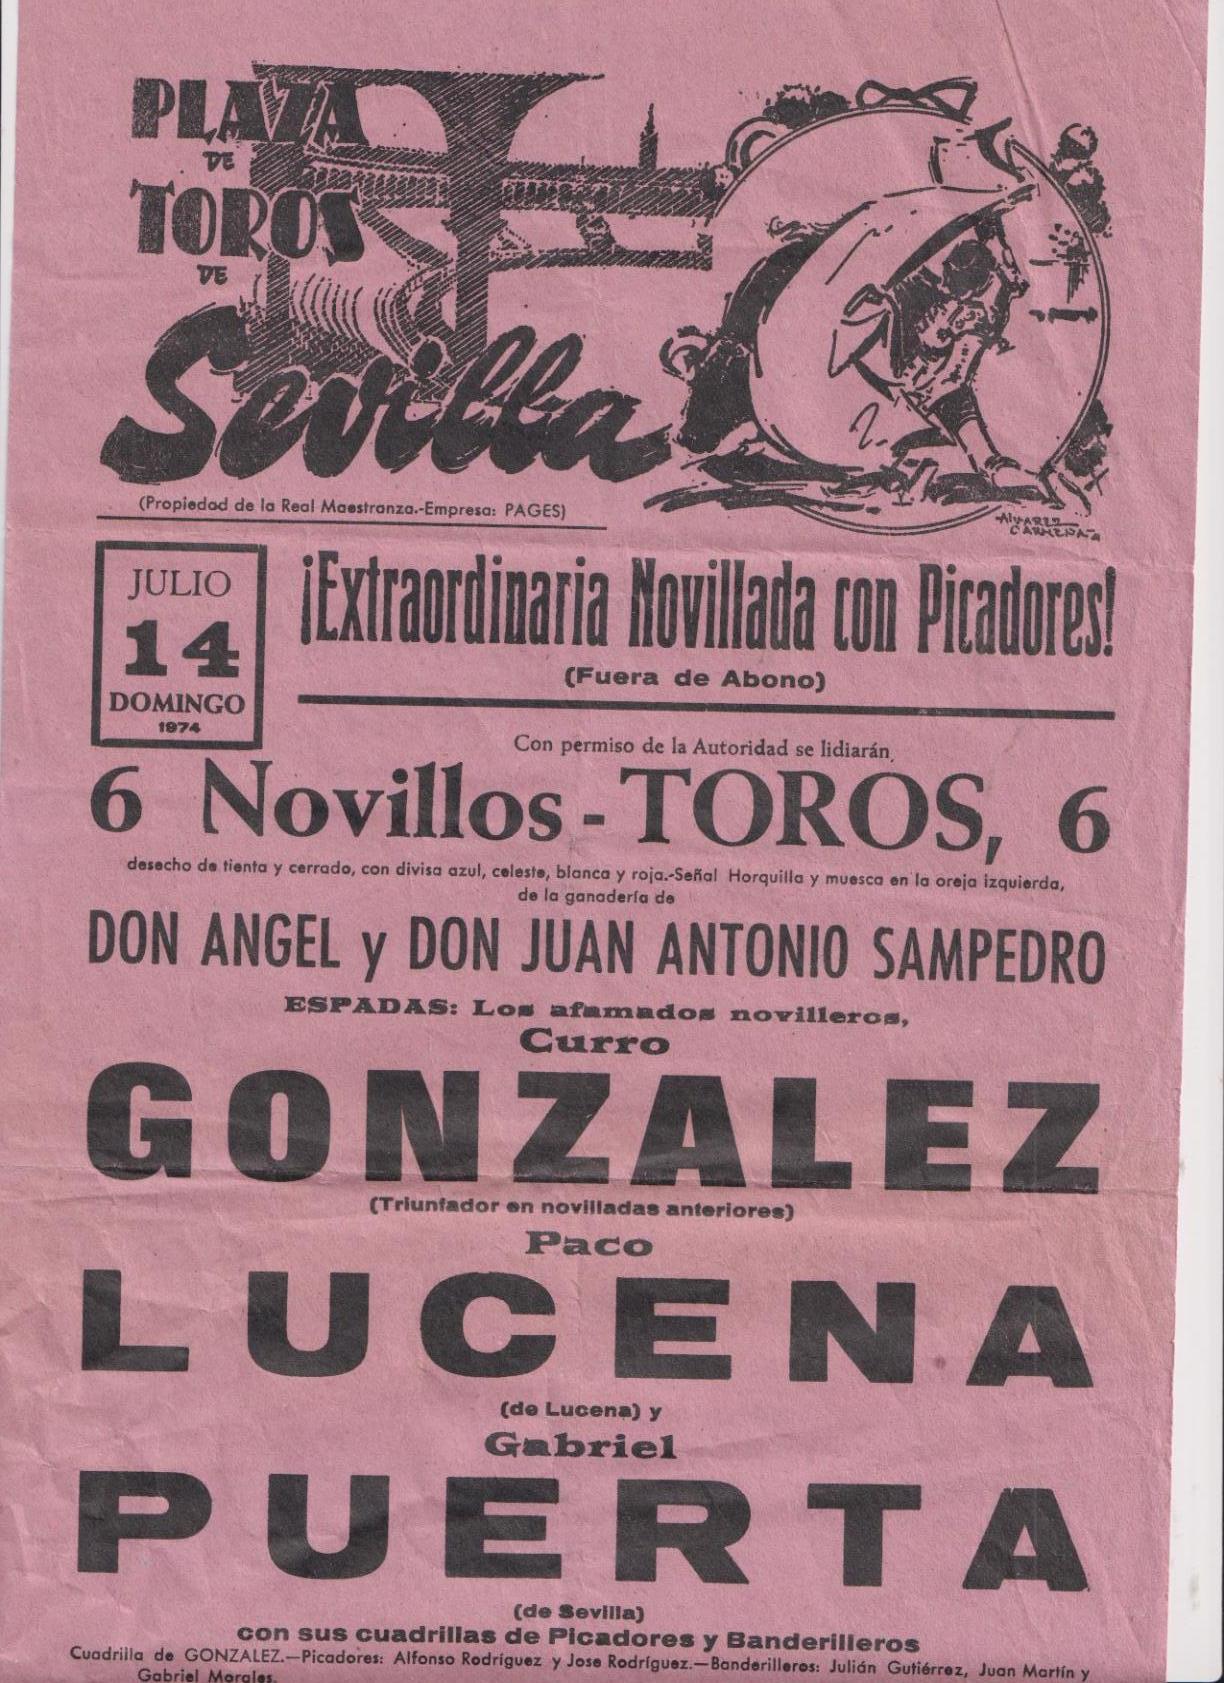 Cartel (42x21) Plaza de Toros de Sevilla. Extraordinaria Novillada con Picadores. 14 Julio 1974